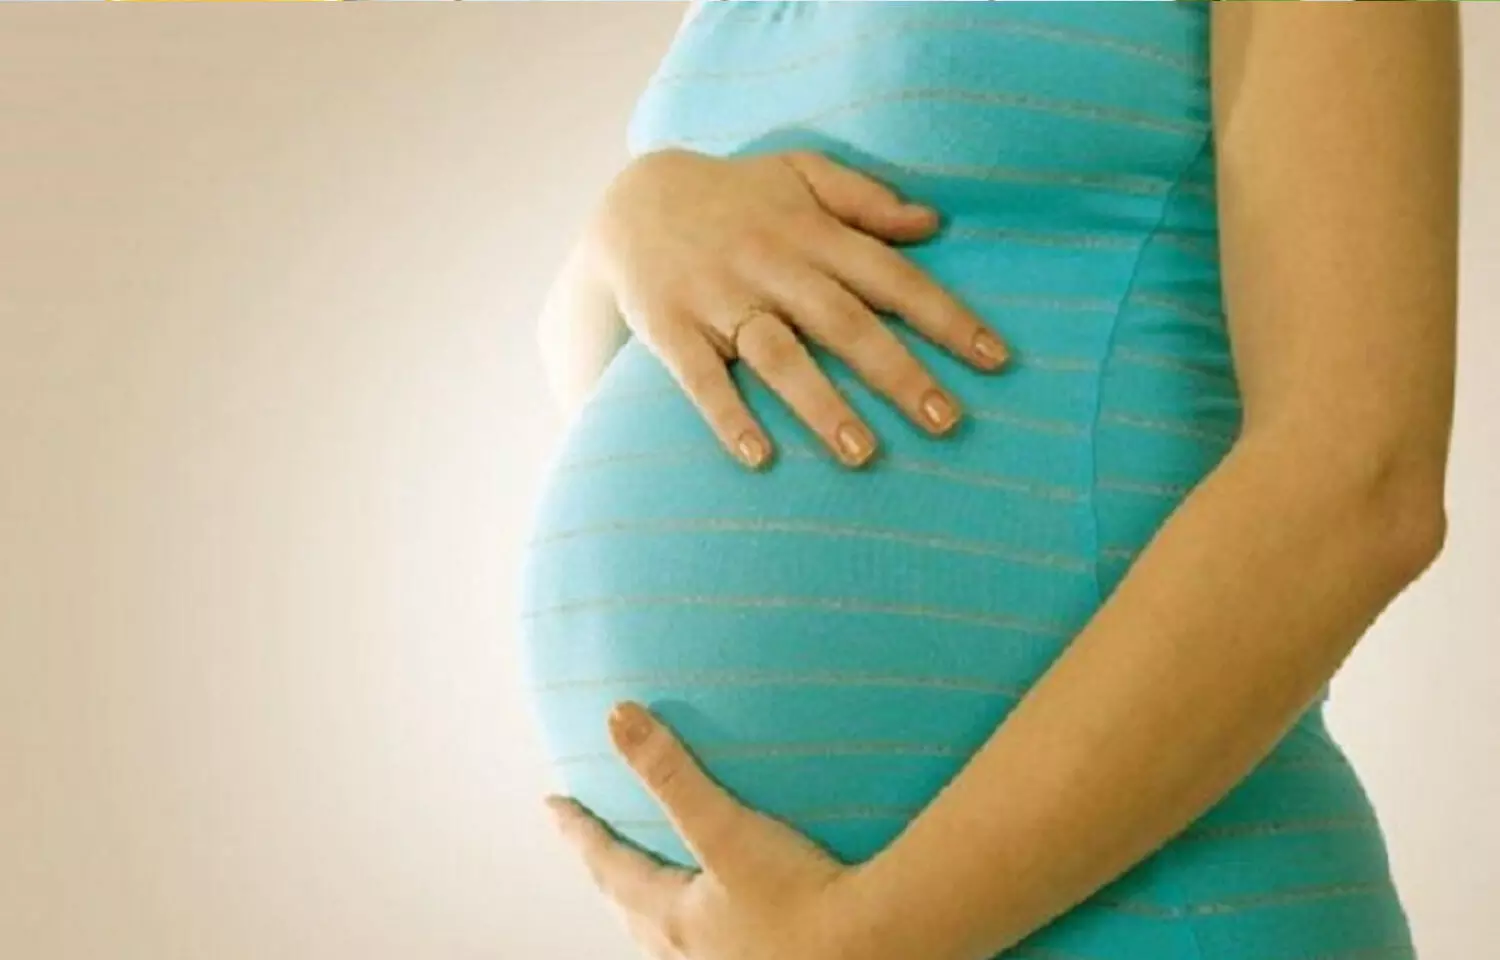 Uterine transplantation- hope for infertile women desiring pregnancy